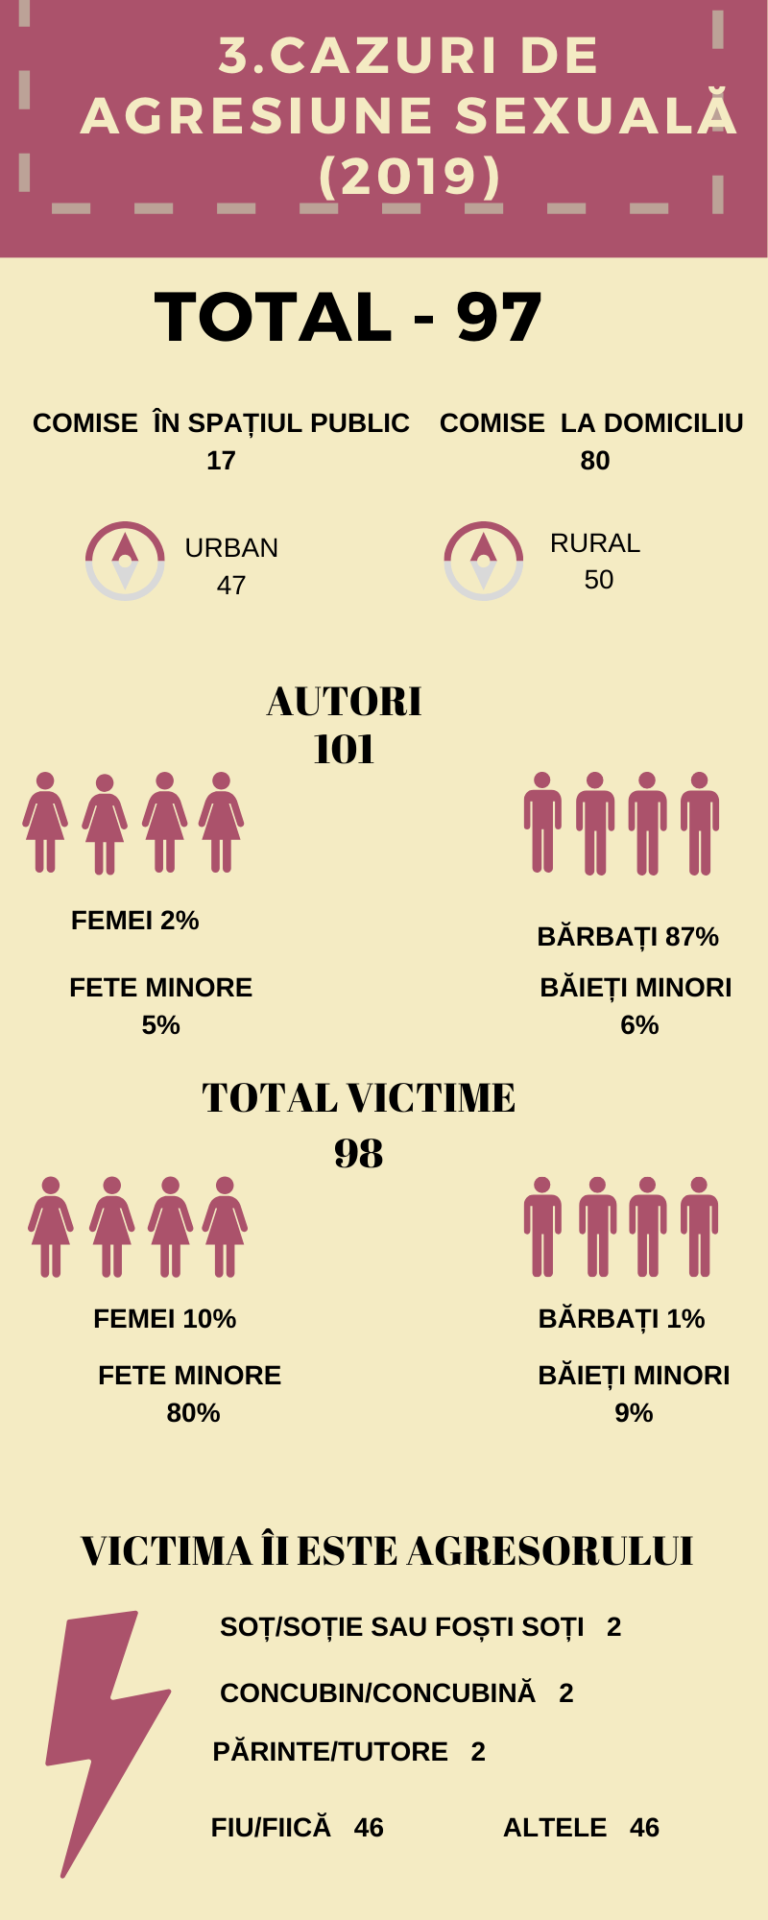 Statistici violență în familie 2019